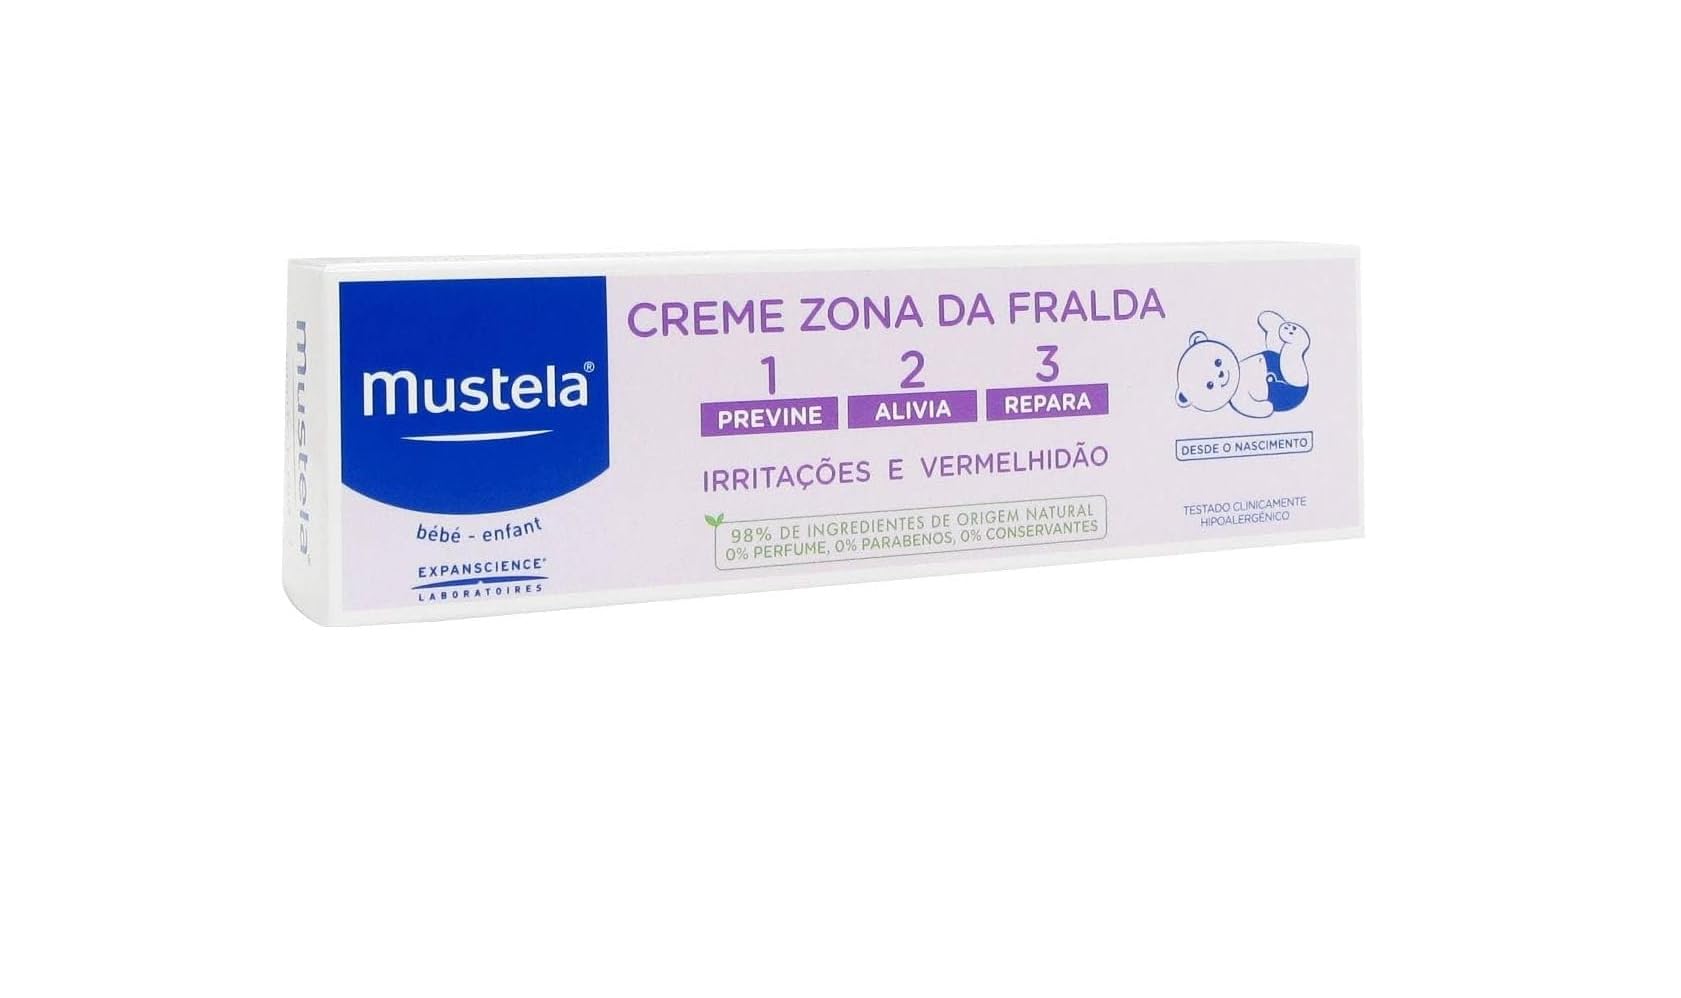 Mustela 1 2 3 Vitamin Barrier Cream